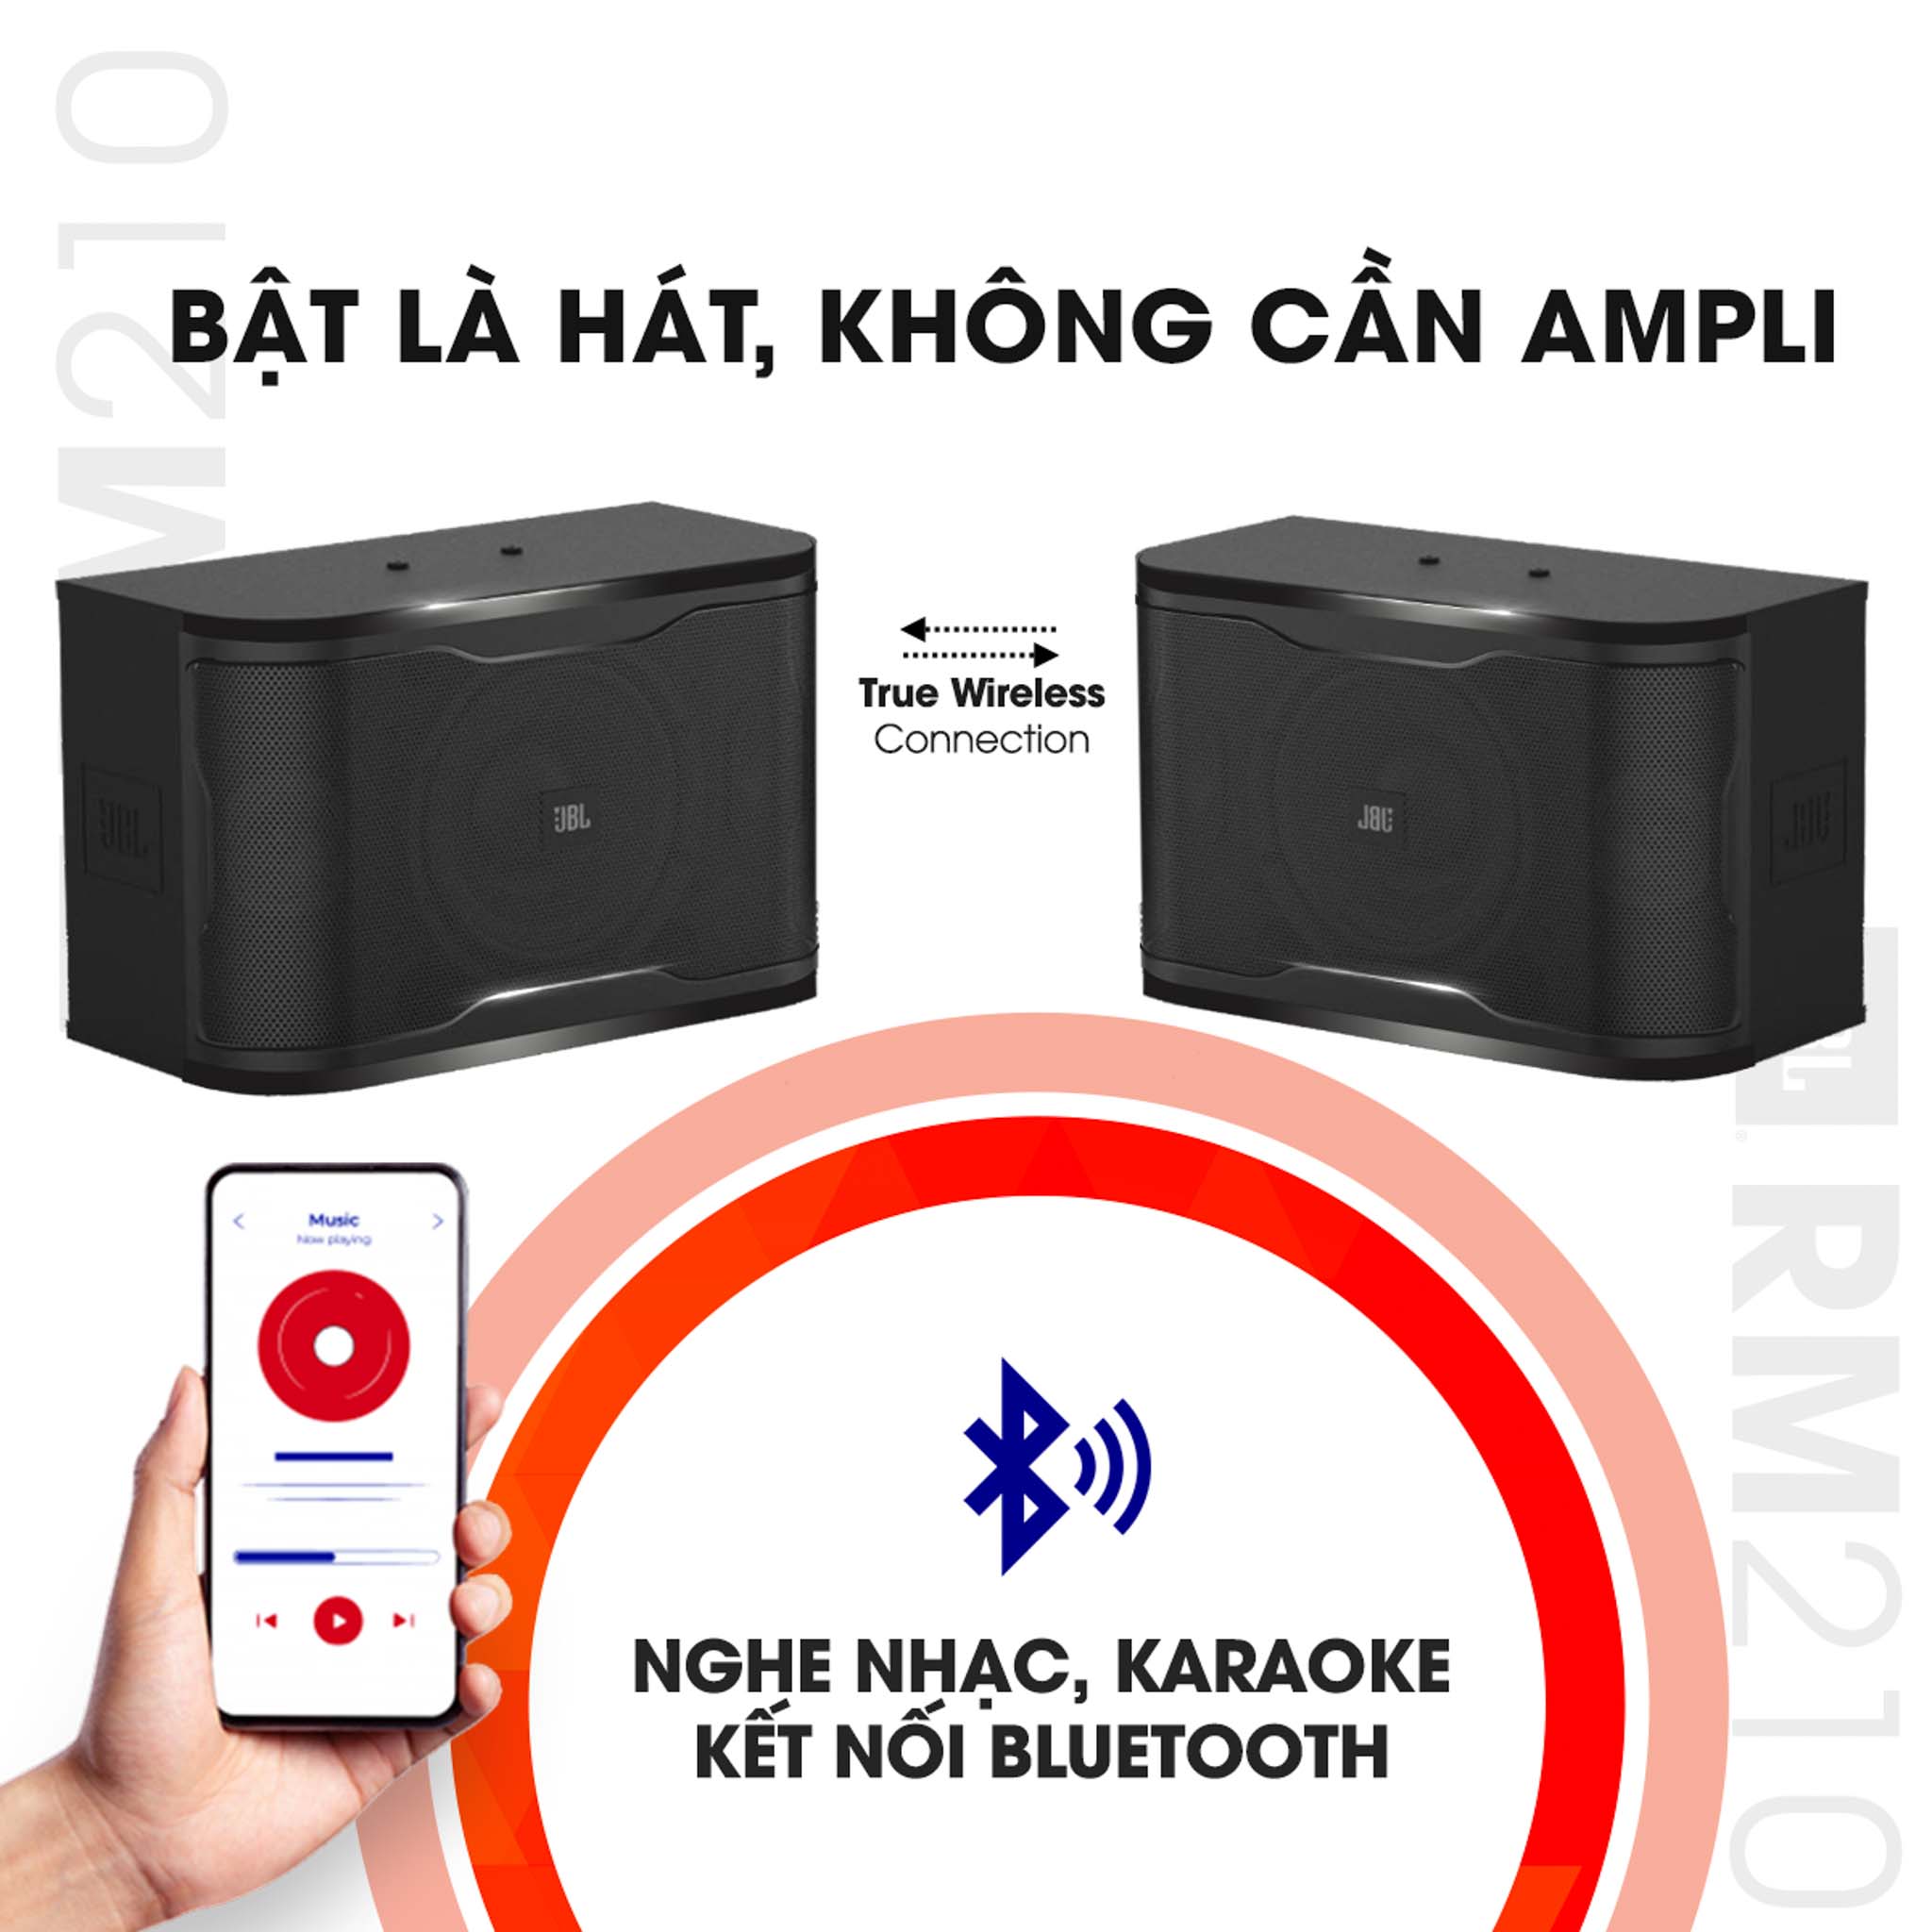 Ra mắt loa Karaoke active JBL RM 210 hoàn toàn mới – Hát theo chuẩn “PRO” tại gia với cấu hình gọn nhẹ